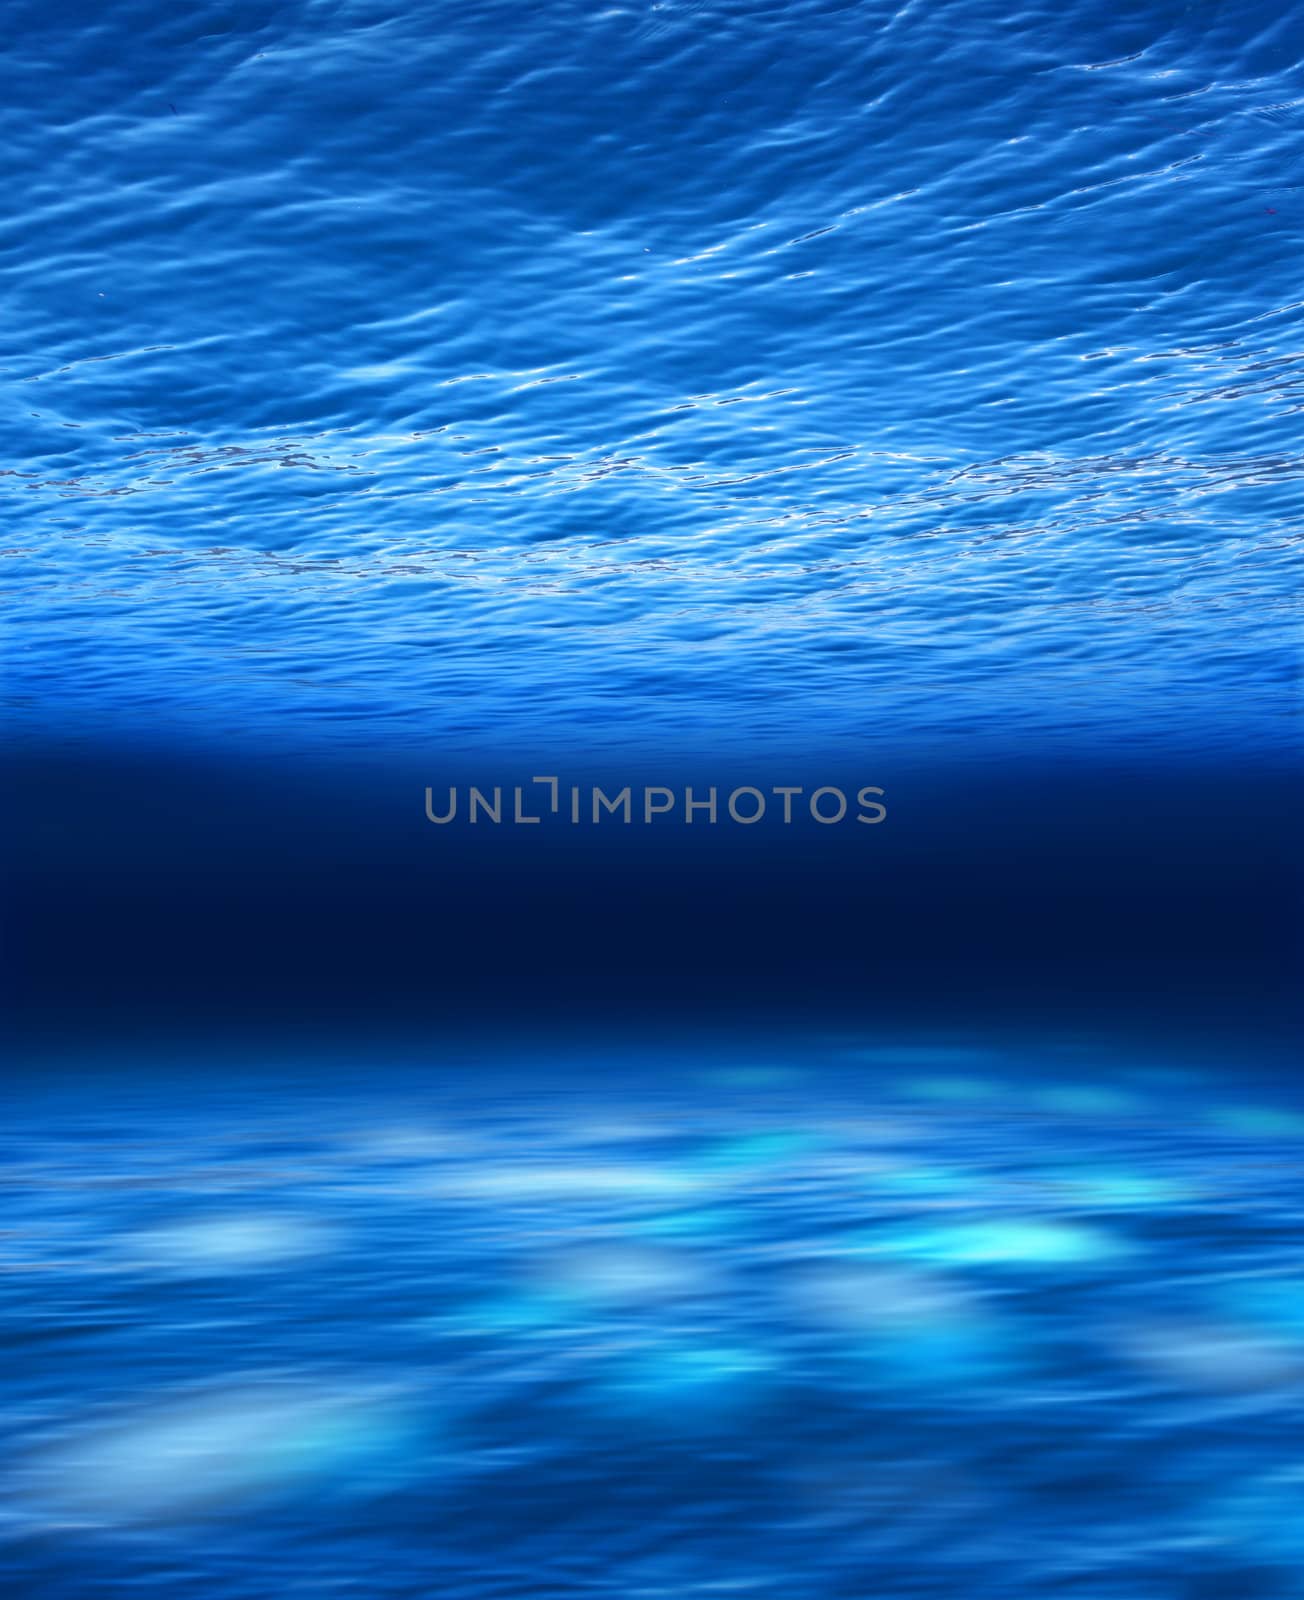 Deep blue sea underwater by anterovium